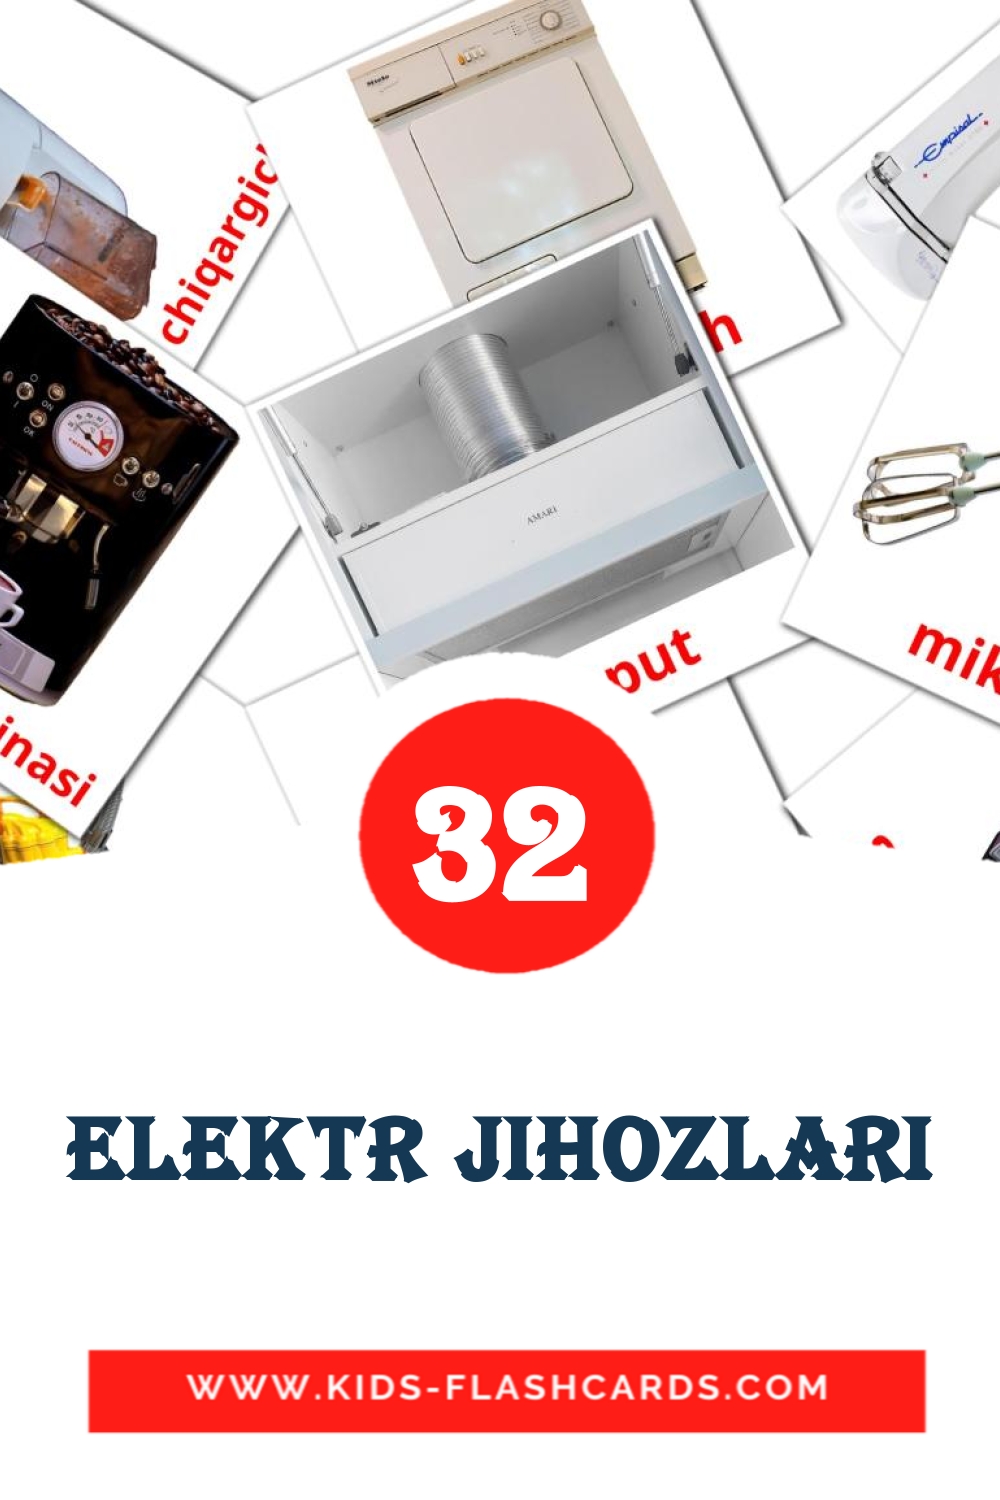 32 Elektr jihozlari fotokaarten voor kleuters in het uzbeekse